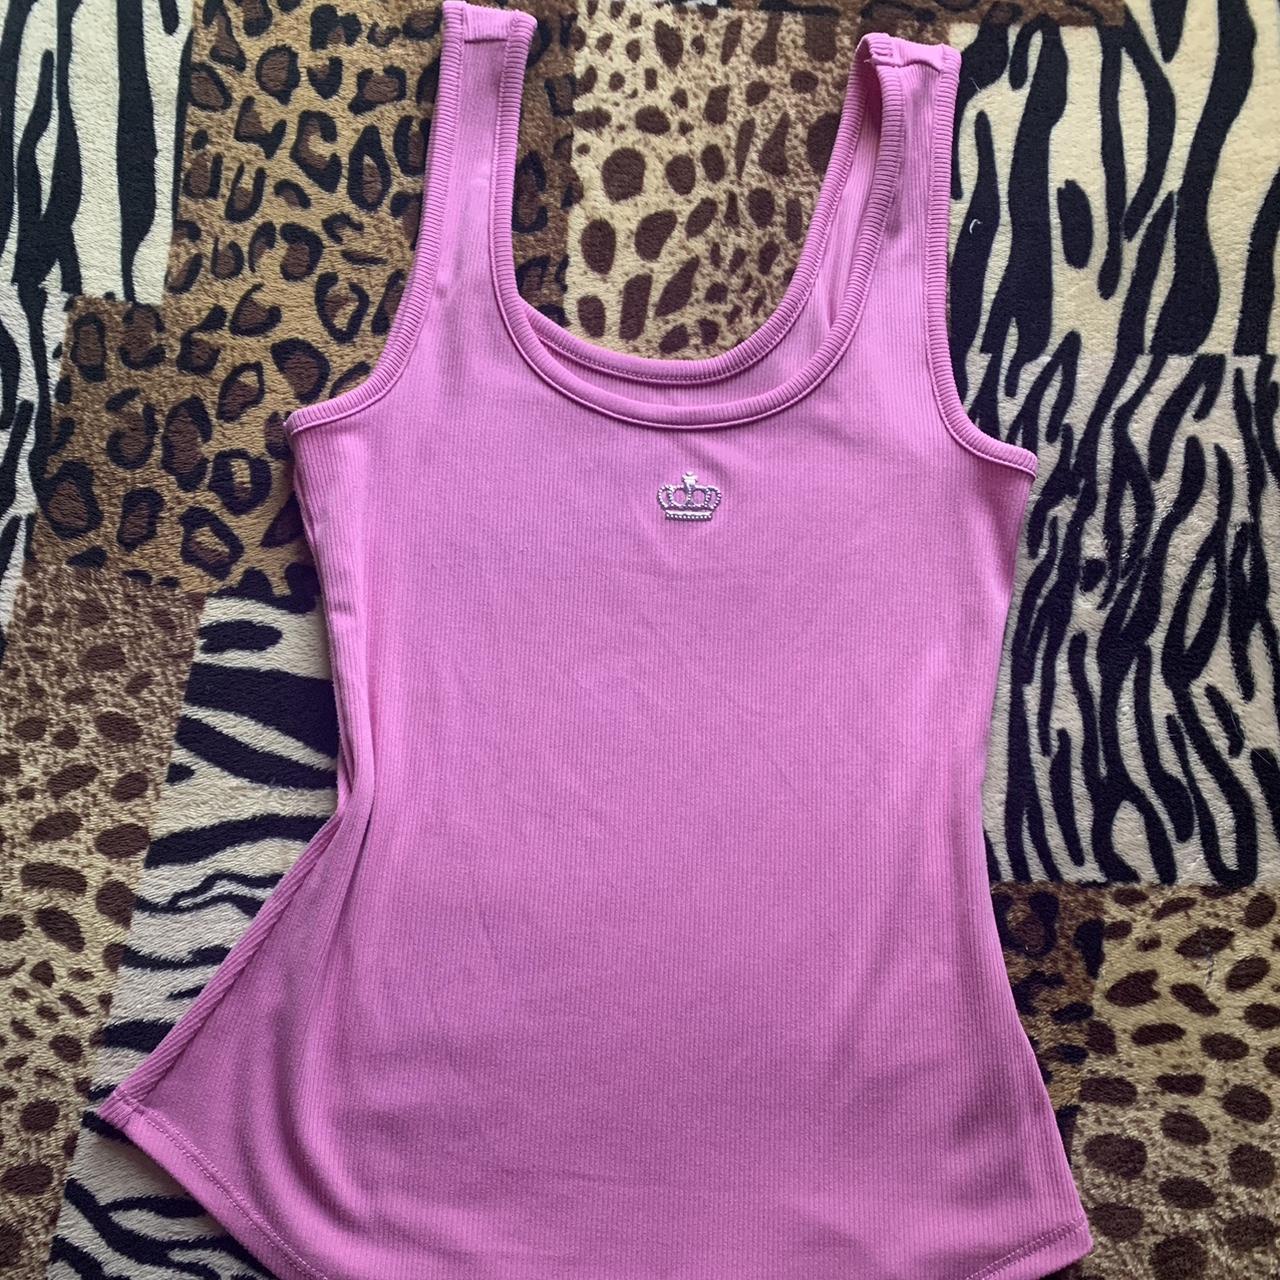 Juicy Couture Women's Pink Vest